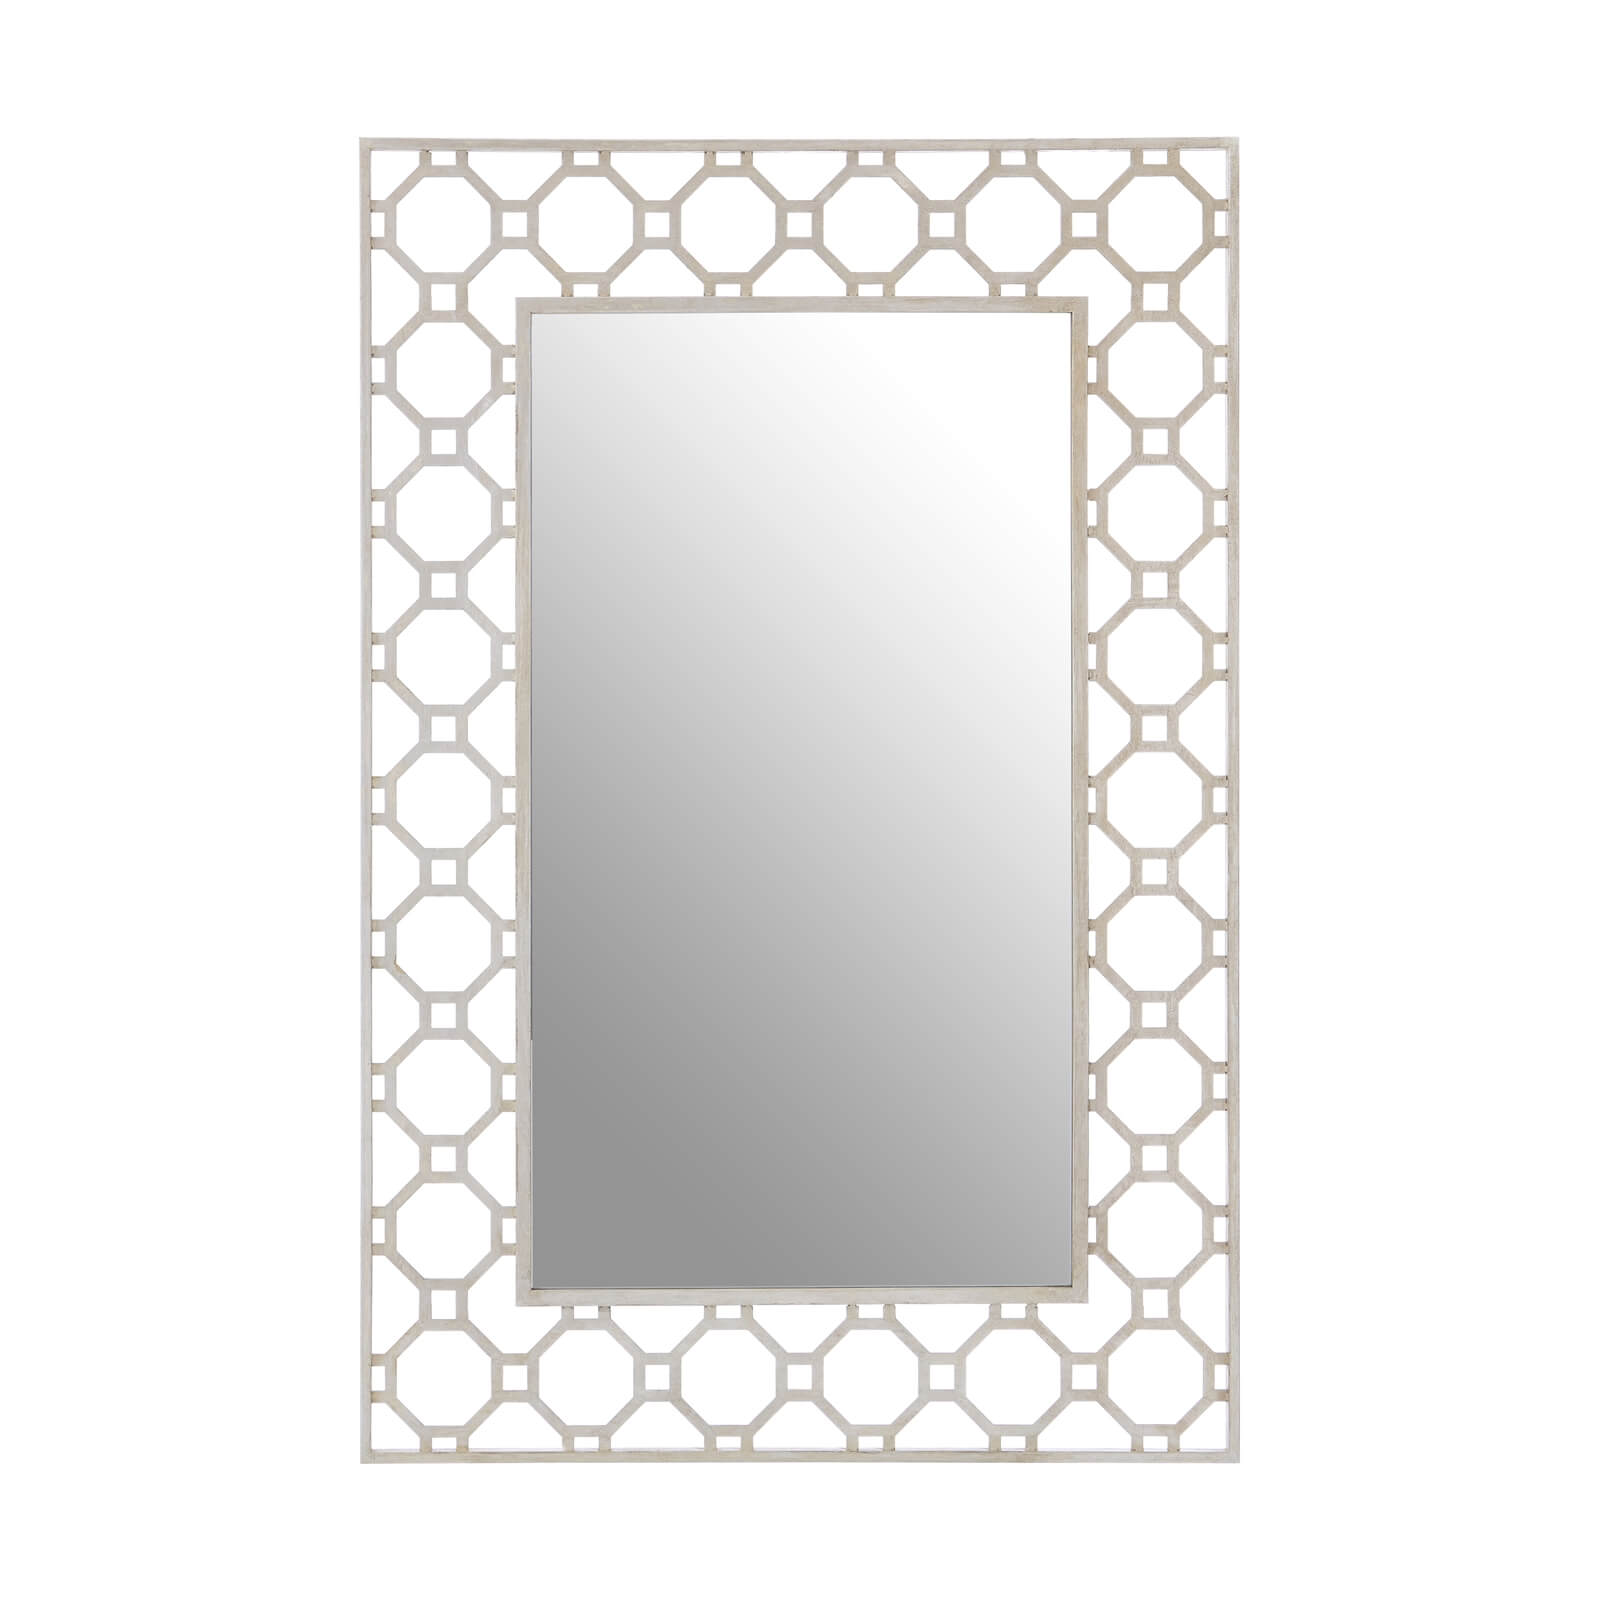 Zara Arabesque Wall Mirror - Silver